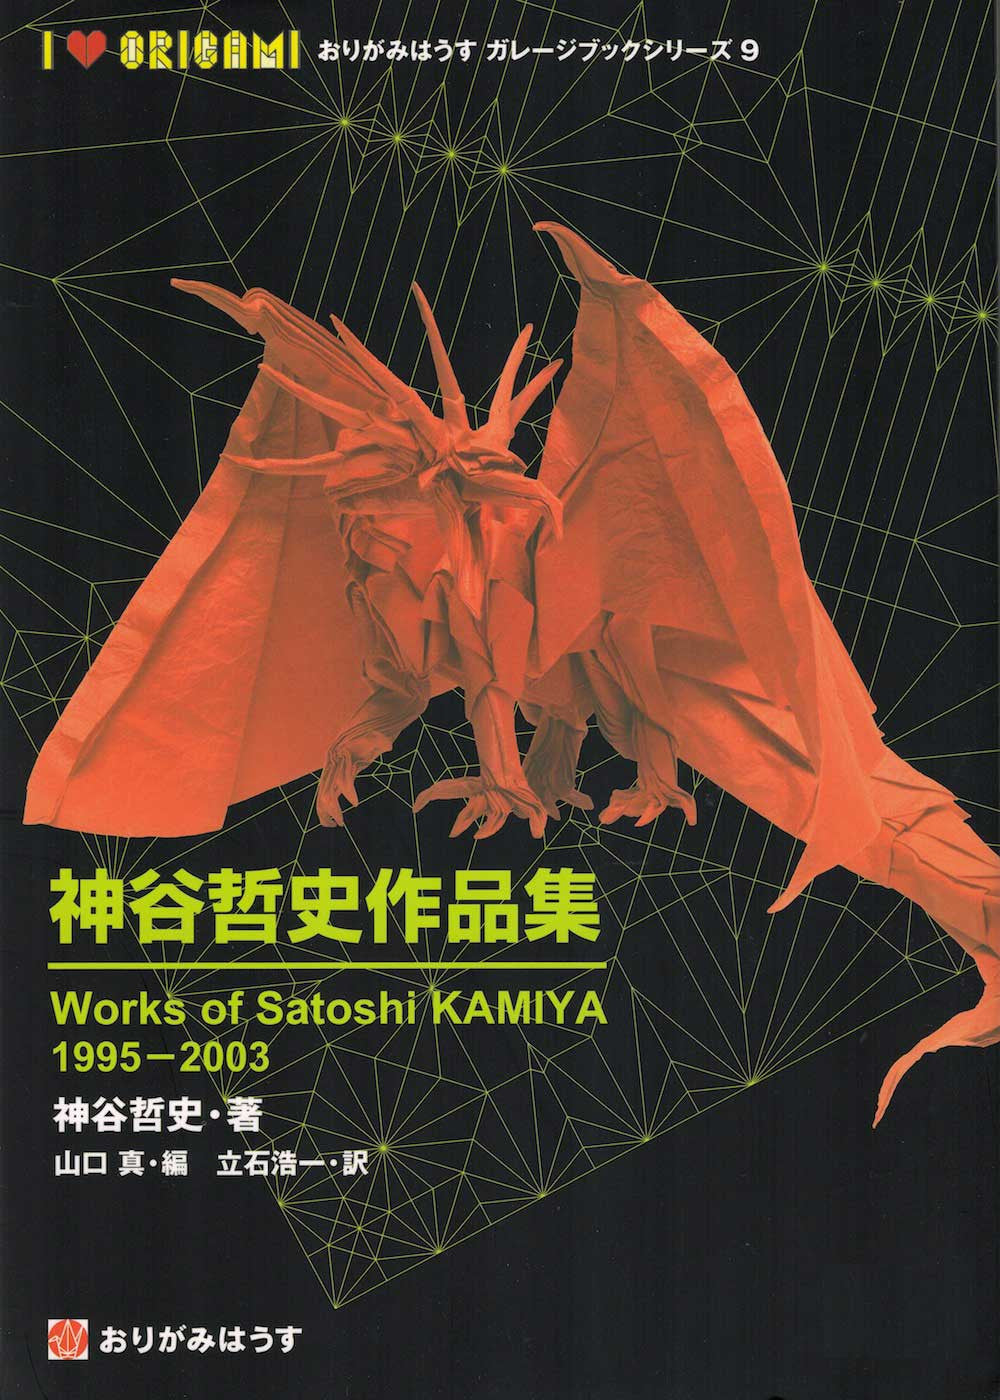 Works of Satoshi Kamiya 1995-2003 – Paper Tree - The Origami Store